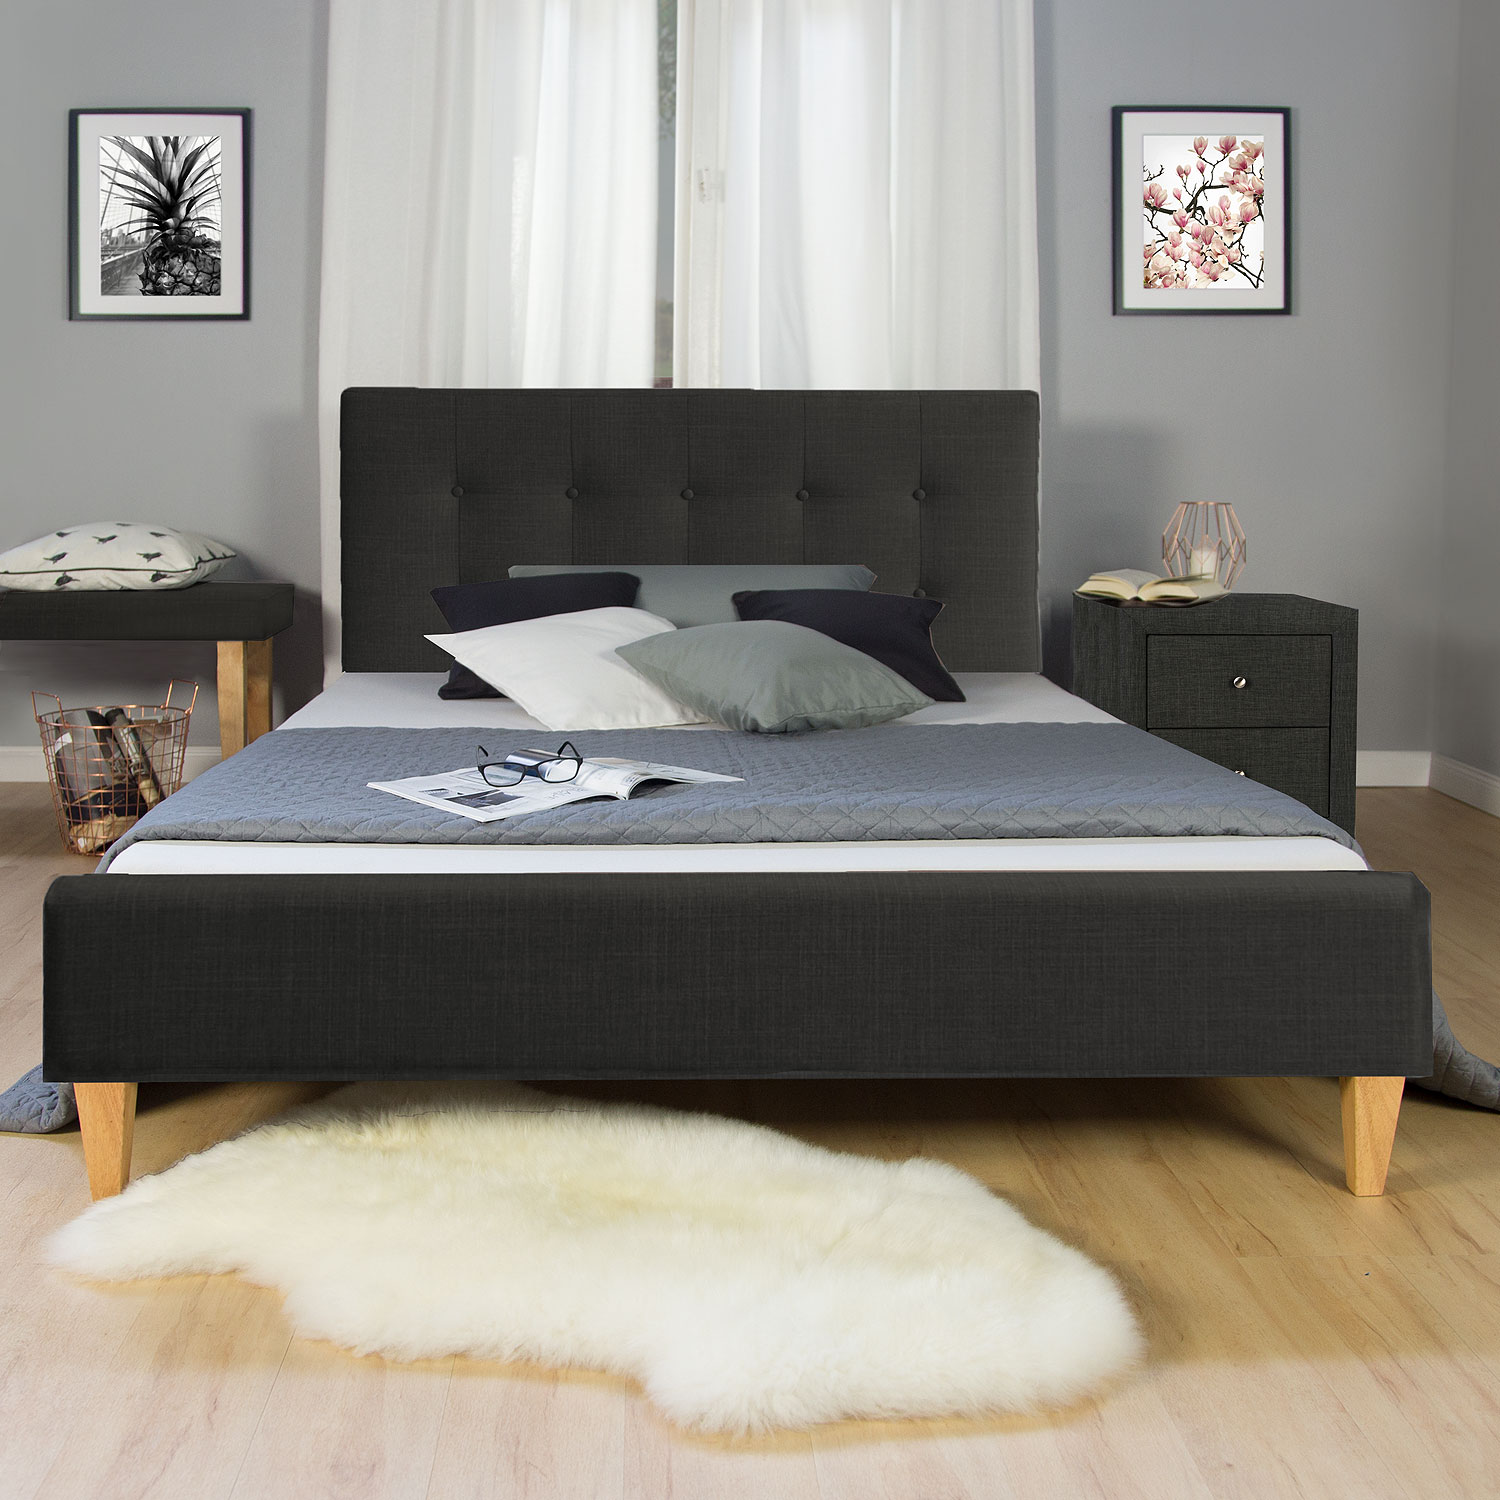 Polsterbett Nachttisch Schwarz Grau Braun 140 160 180 x 200 cm Bett mit Lattenrost Beistelltisch 